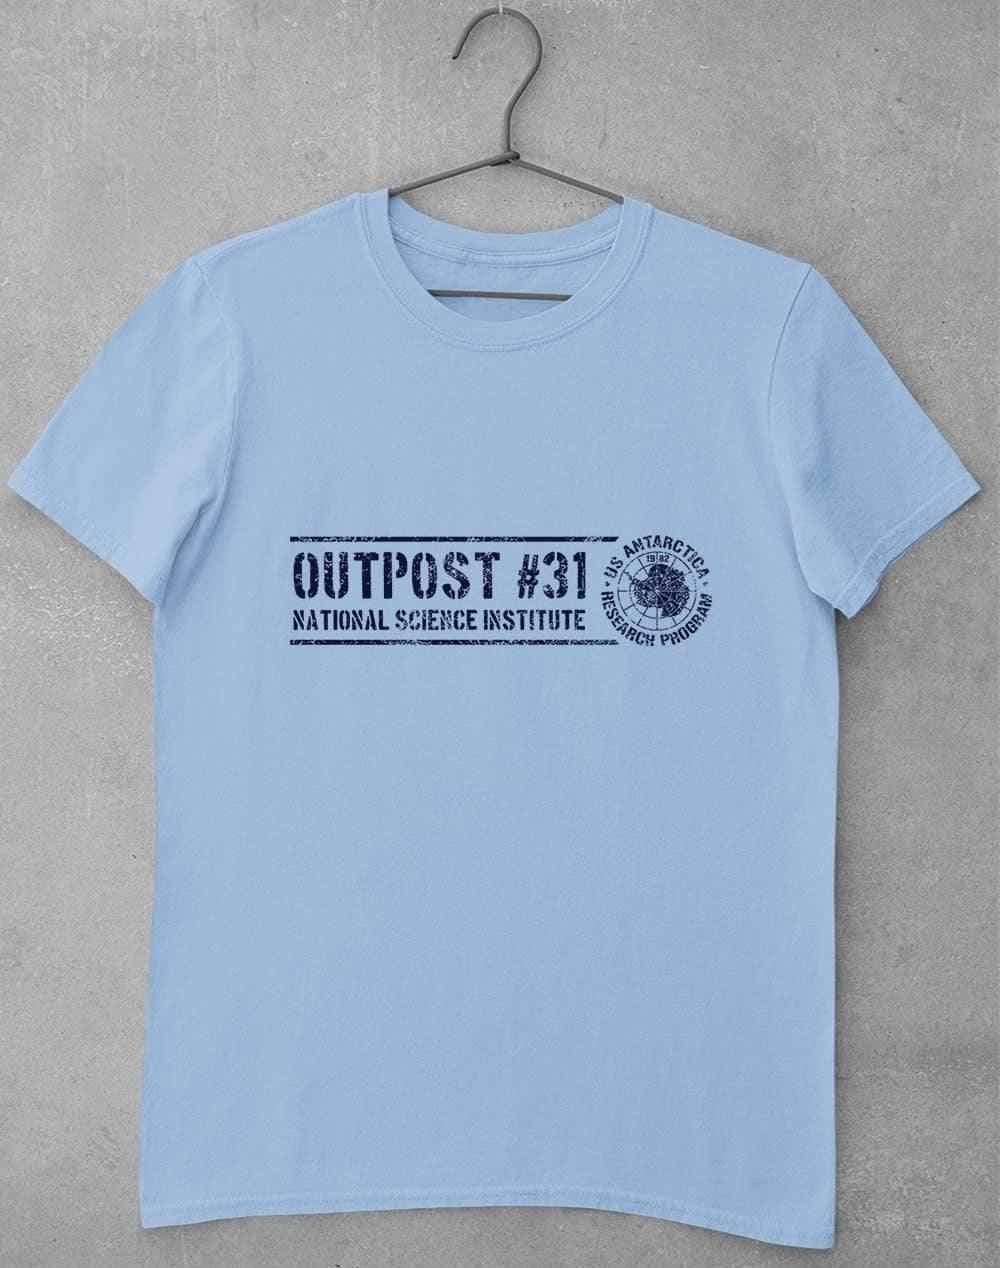 Outpost 31 Antarctica T-Shirt S / Light Blue  - Off World Tees